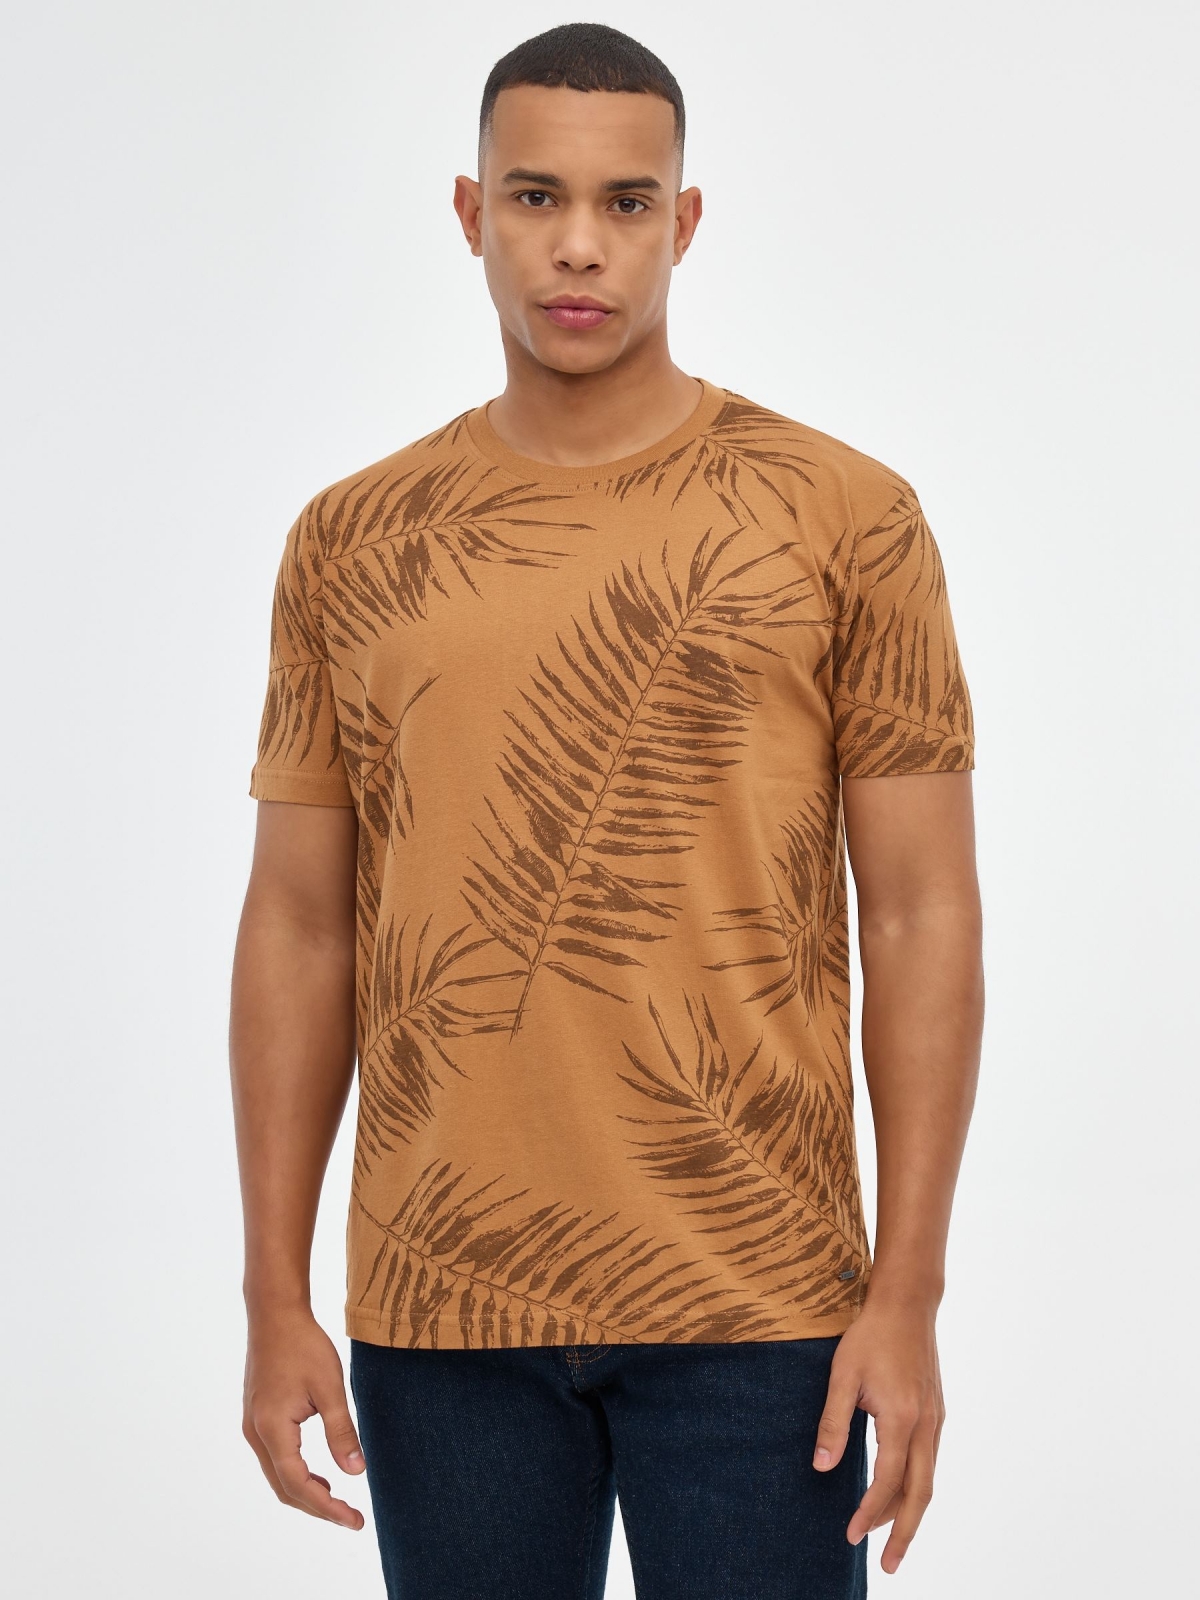 Camiseta print hojas palmeras marrón claro vista media frontal